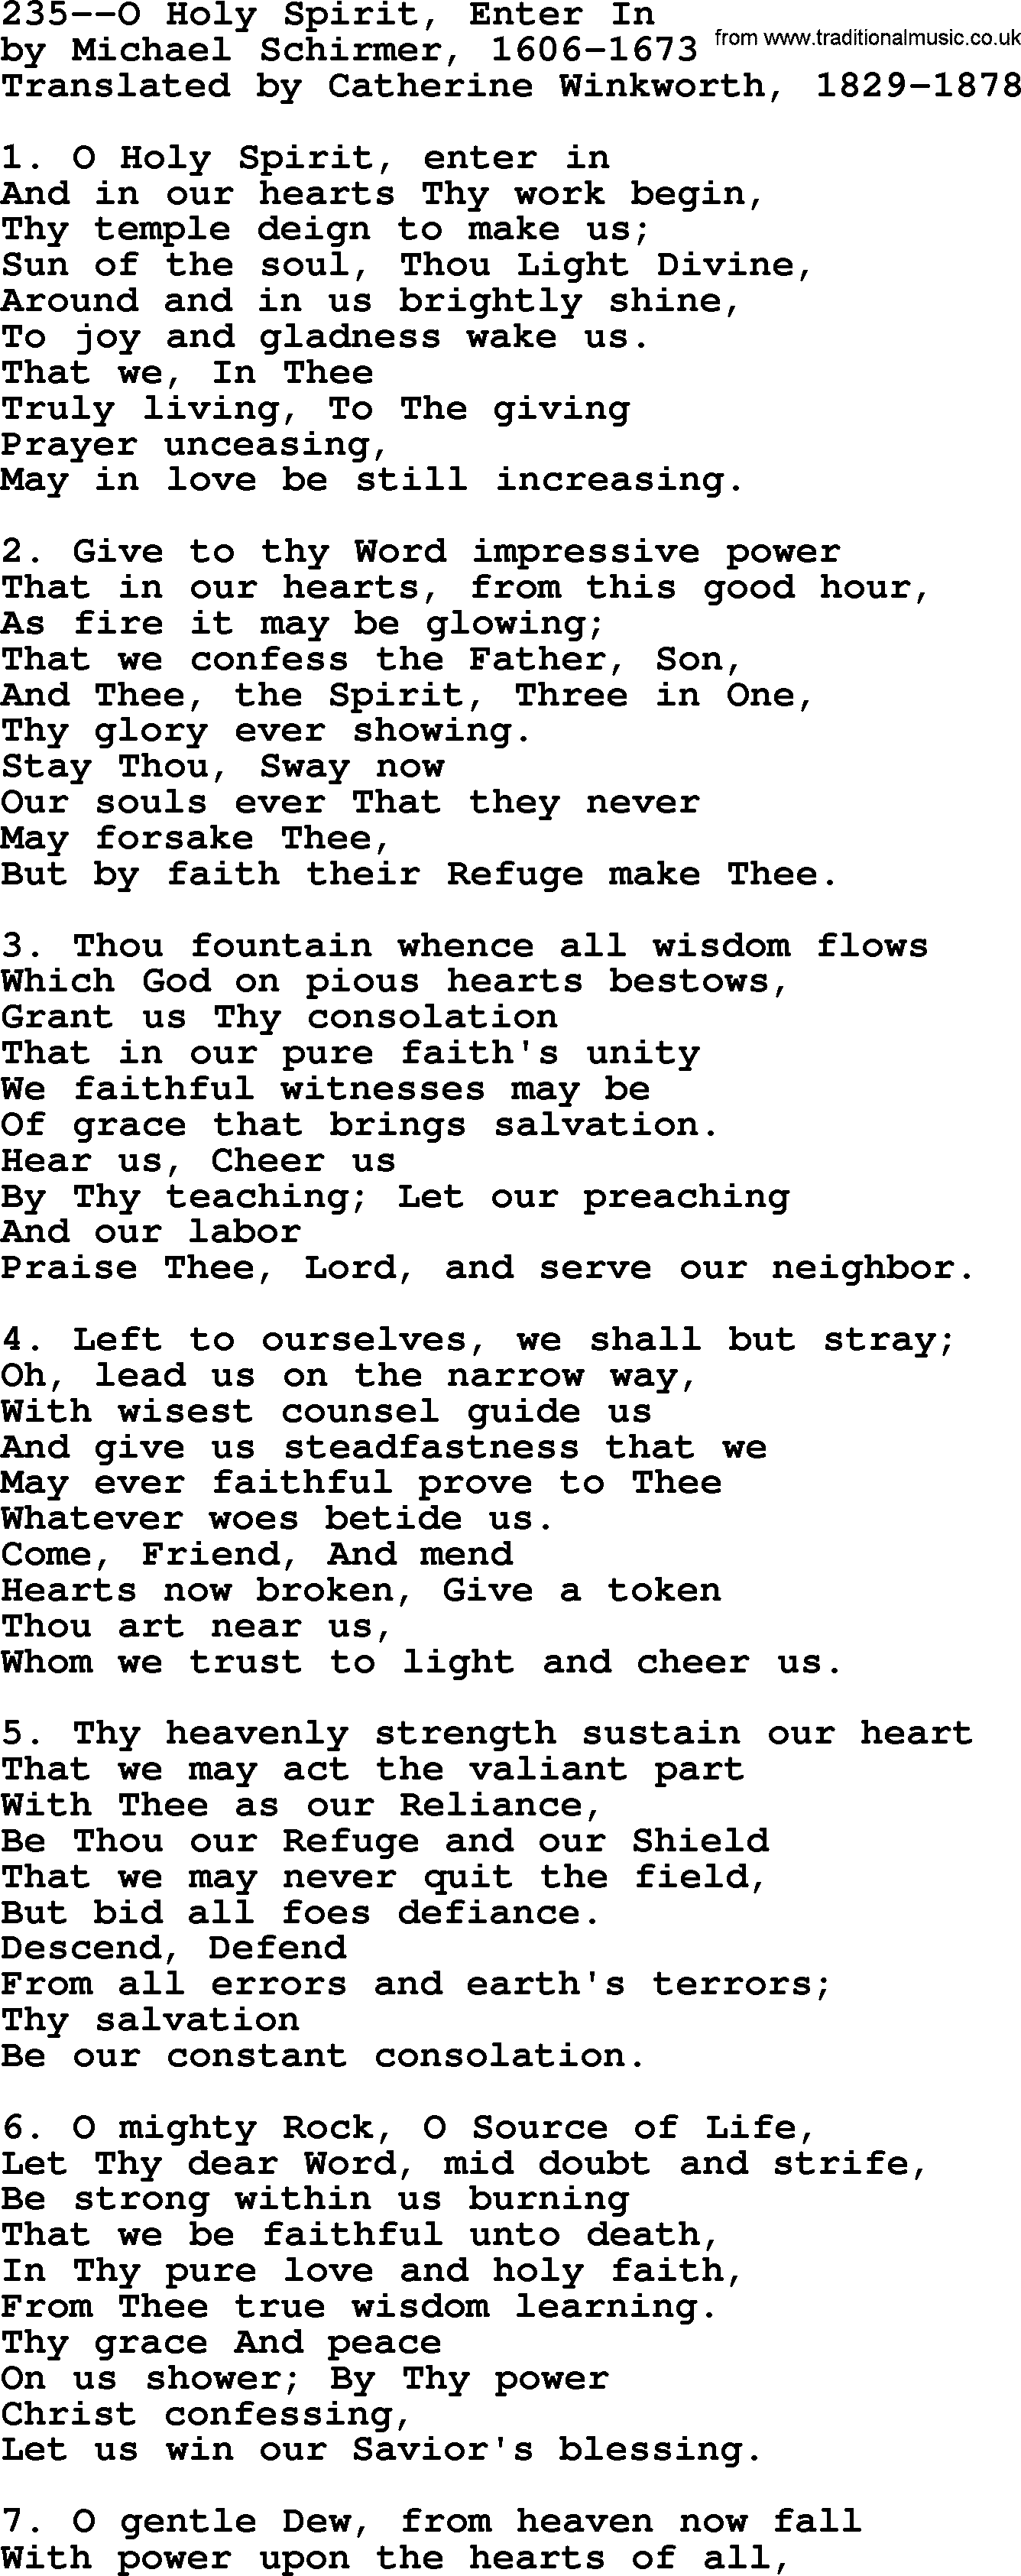 Lutheran Hymn: 235--O Holy Spirit, Enter In.txt lyrics with PDF